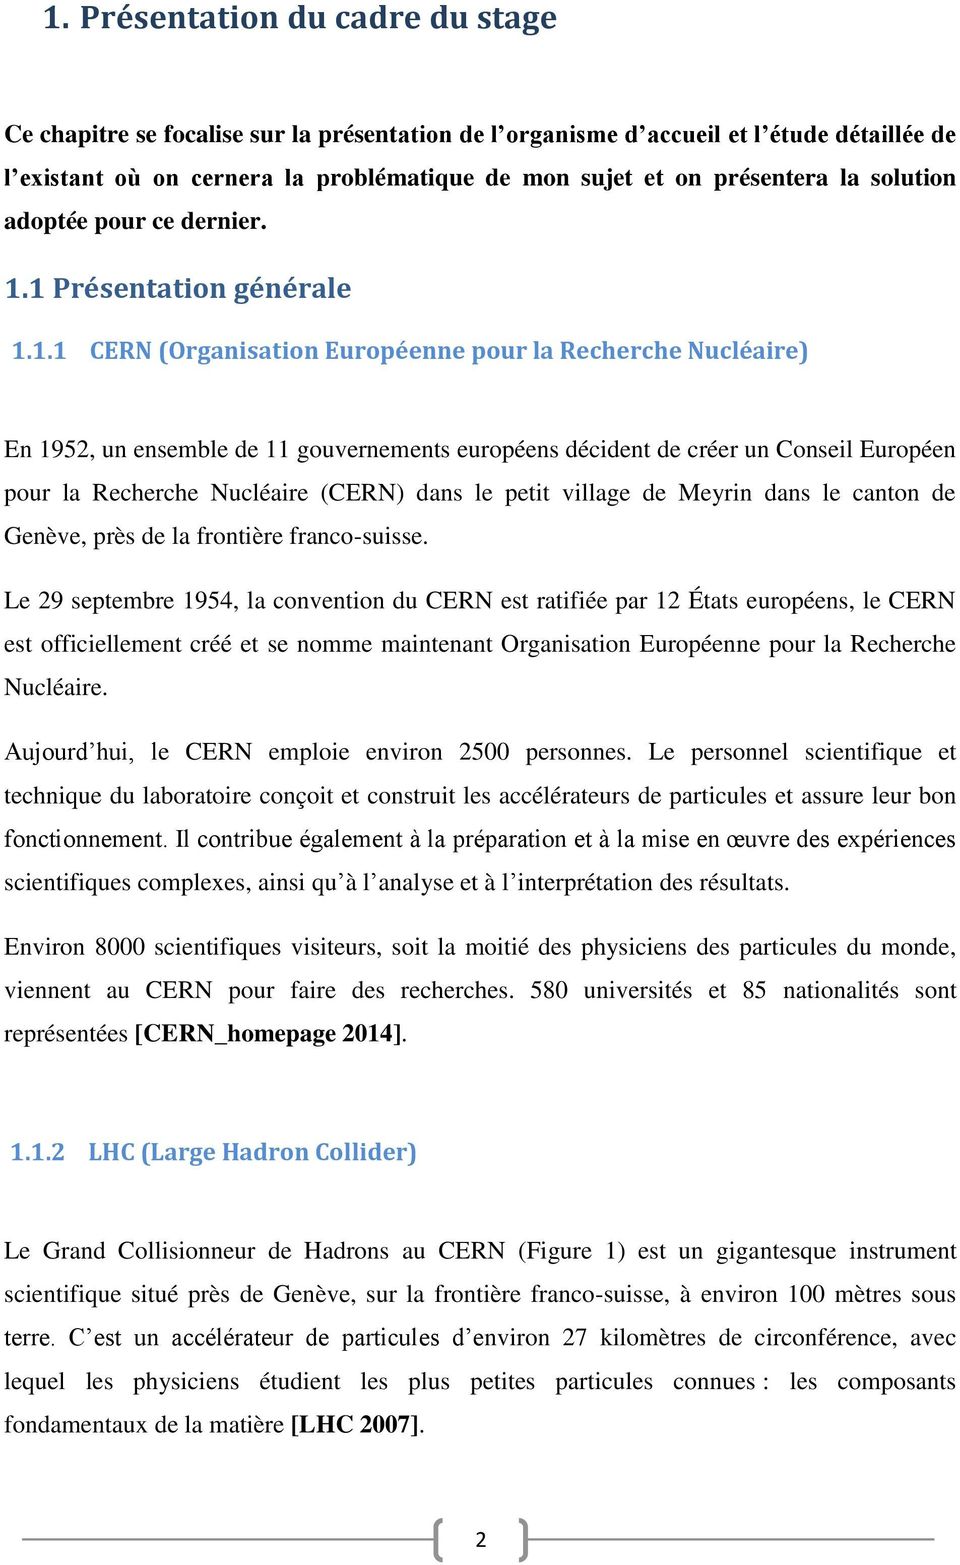 1 Présentation générale 1.1.1 CERN (Organisation Européenne pour la Recherche Nucléaire) En 1952, un ensemble de 11 gouvernements européens décident de créer un Conseil Européen pour la Recherche